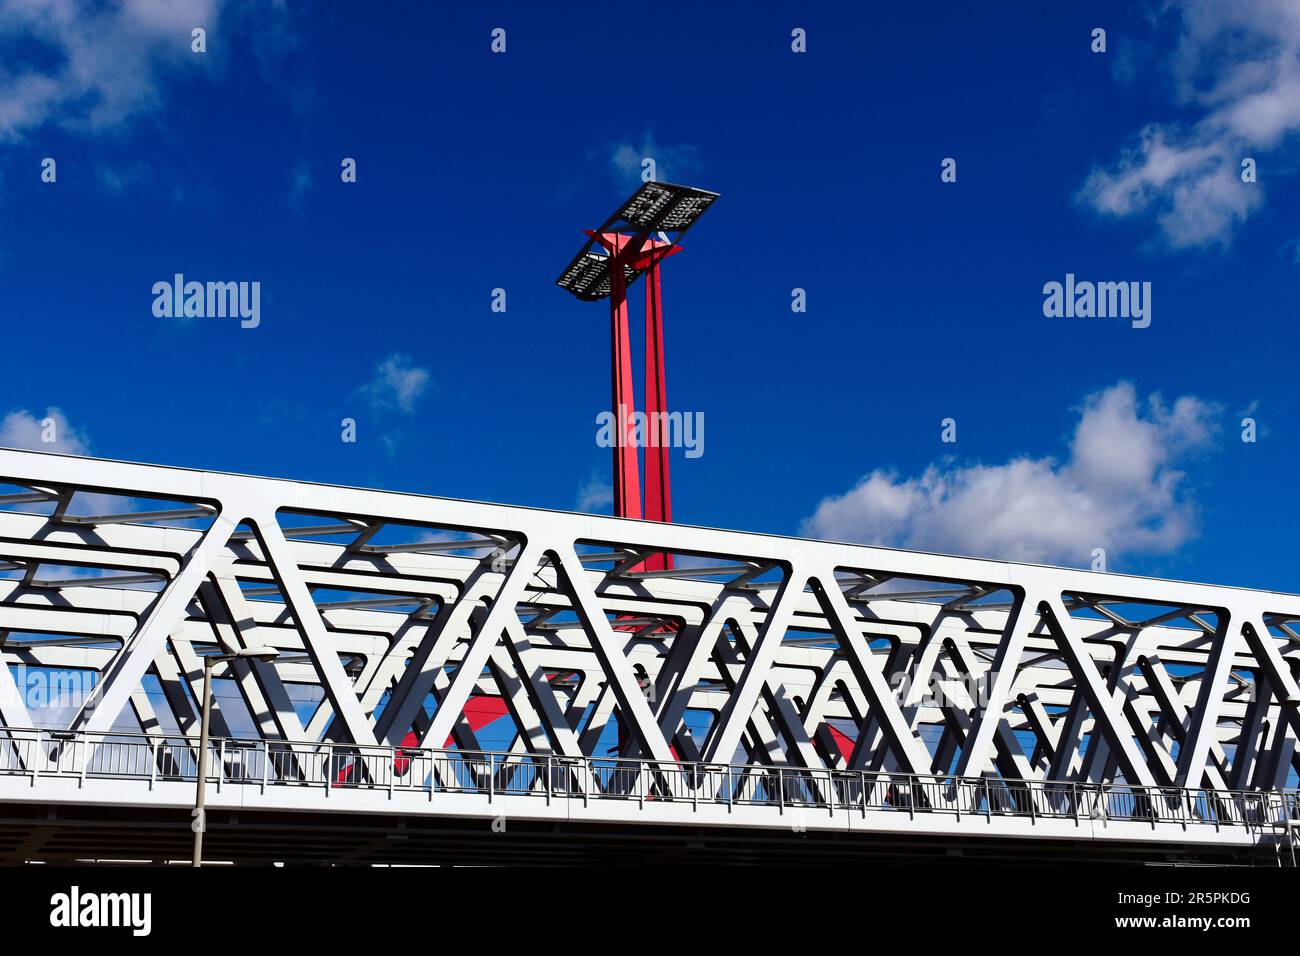 Nahaufnahme der Stahlbahnbrücke aus perspektivischer Sicht. Roter Stahlturm mit Sonnenkollektoren. Blauer Himmel mit weißen Wolken. Stabbalken mit dreieckigen Elementen Stockfoto